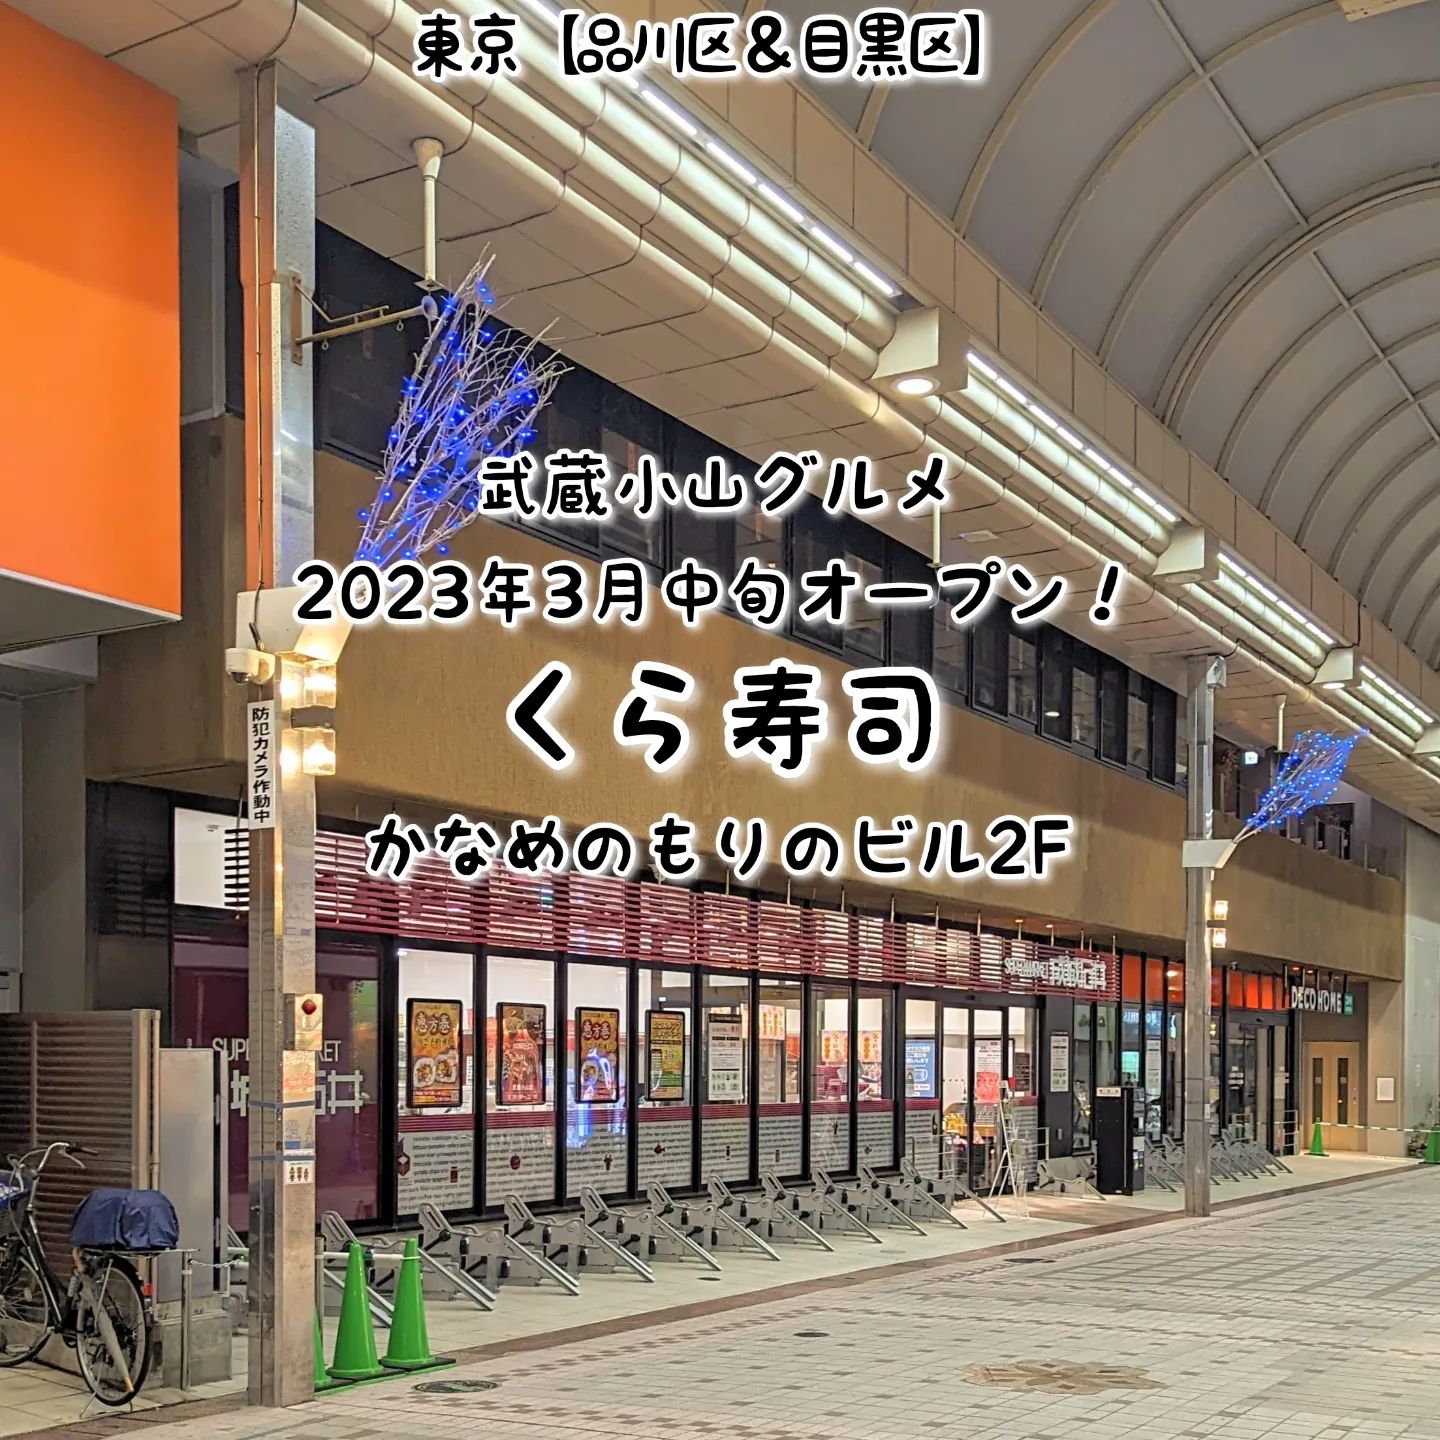 #武蔵小山新店情報「 #くら寿司 」2023年3月中旬オープン予定！安心・美味しい・安いをコンセプトにした噂の寿司屋がついに武蔵小山へきますね！これはビッくらポンで忙しくなりそうでございます。場所は、武蔵小山駅からパルム商店街を中原街道方面へずっと進んで、アーケード終わりが見え始めたら左手側にあるかなめのもりのビル2階にございます。成城石井の入ったビルでございますね。【侍猫を応援】インスタだけでなくメインサイトも沢山見ていただくと侍猫がさらに元気になって武蔵小山グルメをもっと食べ歩きます！（追加画像＆地図あり！）※メインサイトへの移動はプロフィールのURLが簡単！→ @musashikoyama.news →https://musashikoyama.samuraicat.jp/ 【侍猫に連絡】気になるお店や新メニュー情報などお気軽にDMください！気まぐれに投稿いたします！もちろんお仕事の依頼も受付中でございます。#武蔵小山 #武蔵小山情報 #武蔵小山ランチ #武蔵小山商店街  #武蔵小山グルメ #武蔵小山カフェ #西小山 #戸越銀座 #不動前 #碑文谷 #戸越 #中延  #荏原中延 #目黒本町 #品川 #品川区 #品川グルメ #目黒 #目黒区 #目黒グルメ #東京 #東京グルメ #新店 #新店オープン #武蔵小山新店 #武蔵小山オープン #武蔵小山寿司屋 #寿司